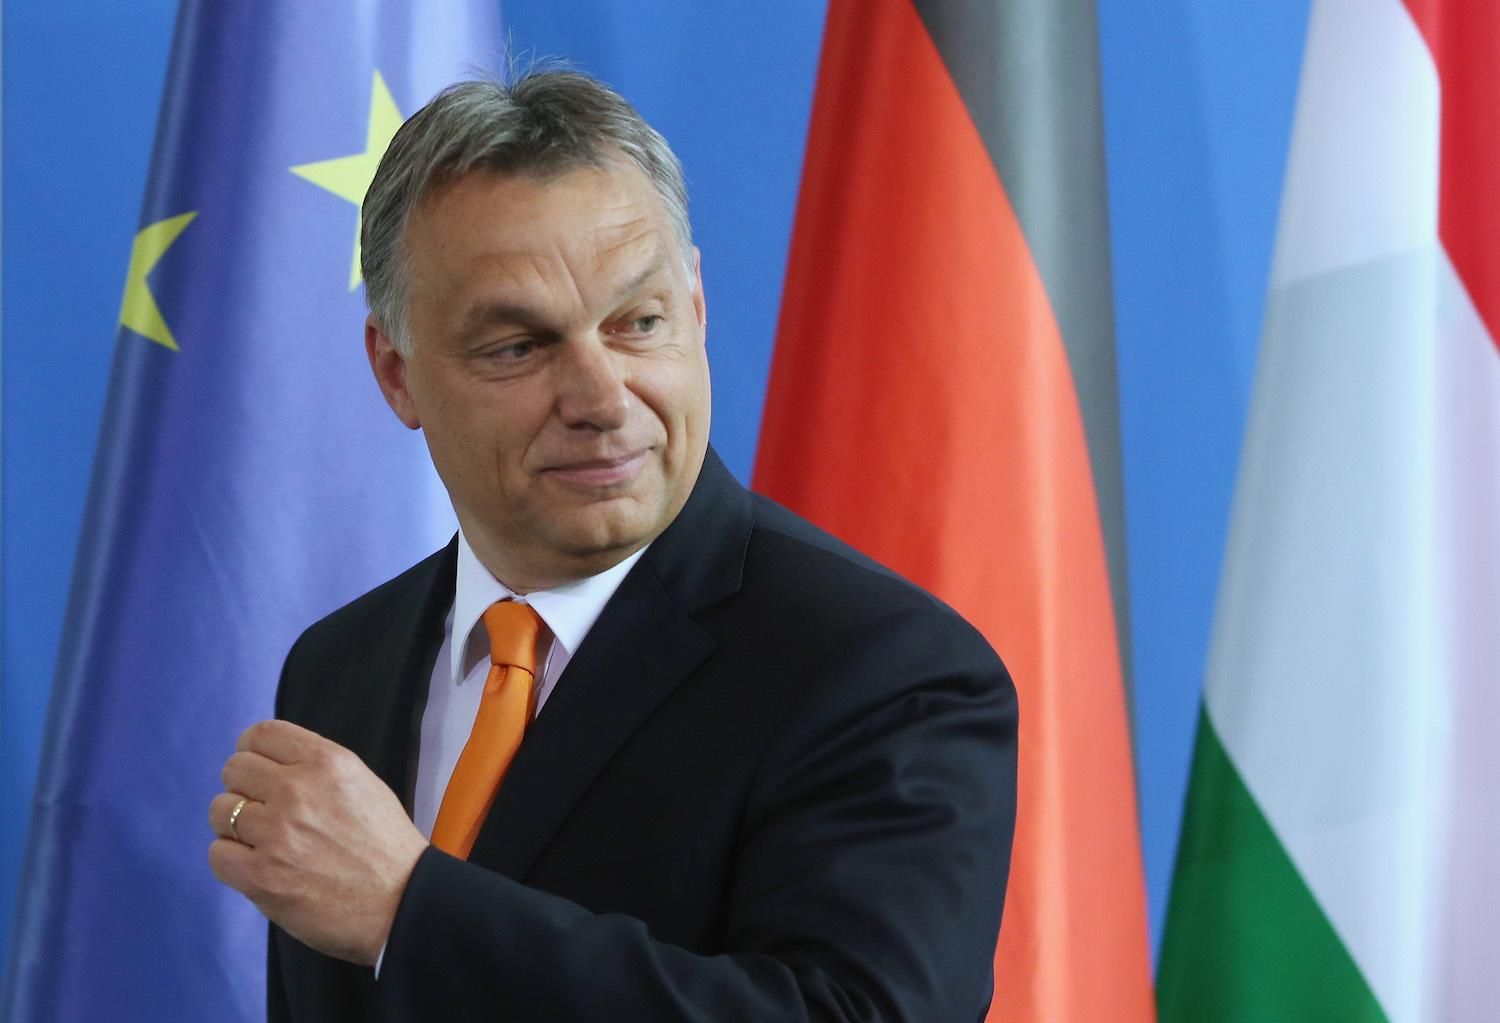 "Терор стане частиною життя": Угорщина звинуватила ЄС в імперських планах